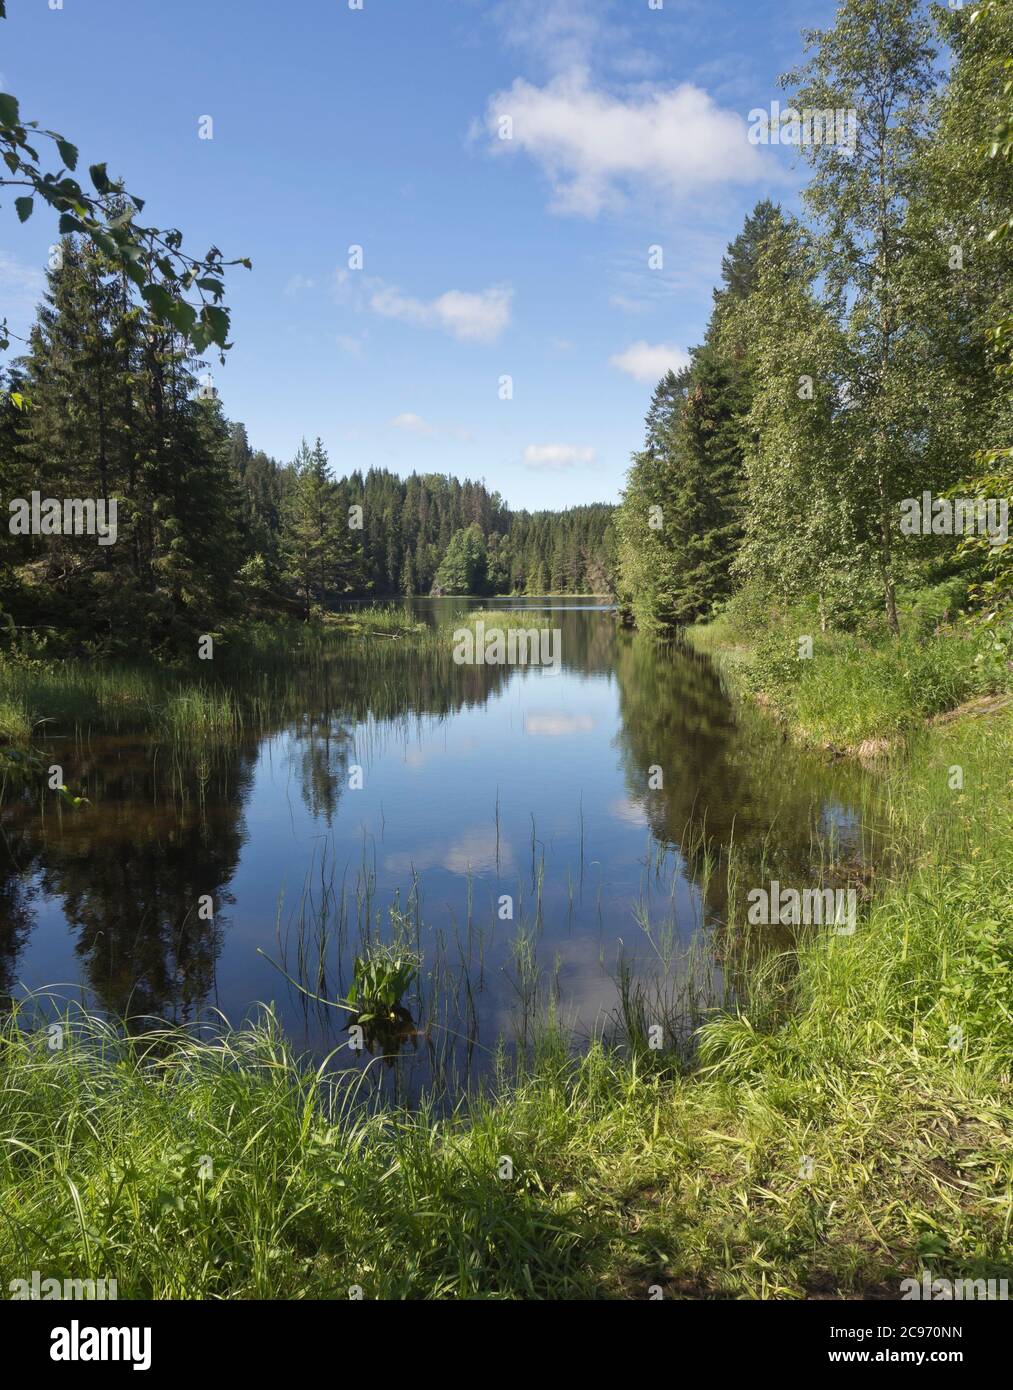 Splendido paesaggio estivo con lago e foresta, a Ostmarka, alla periferia della capitale norvegese Oslo Foto Stock